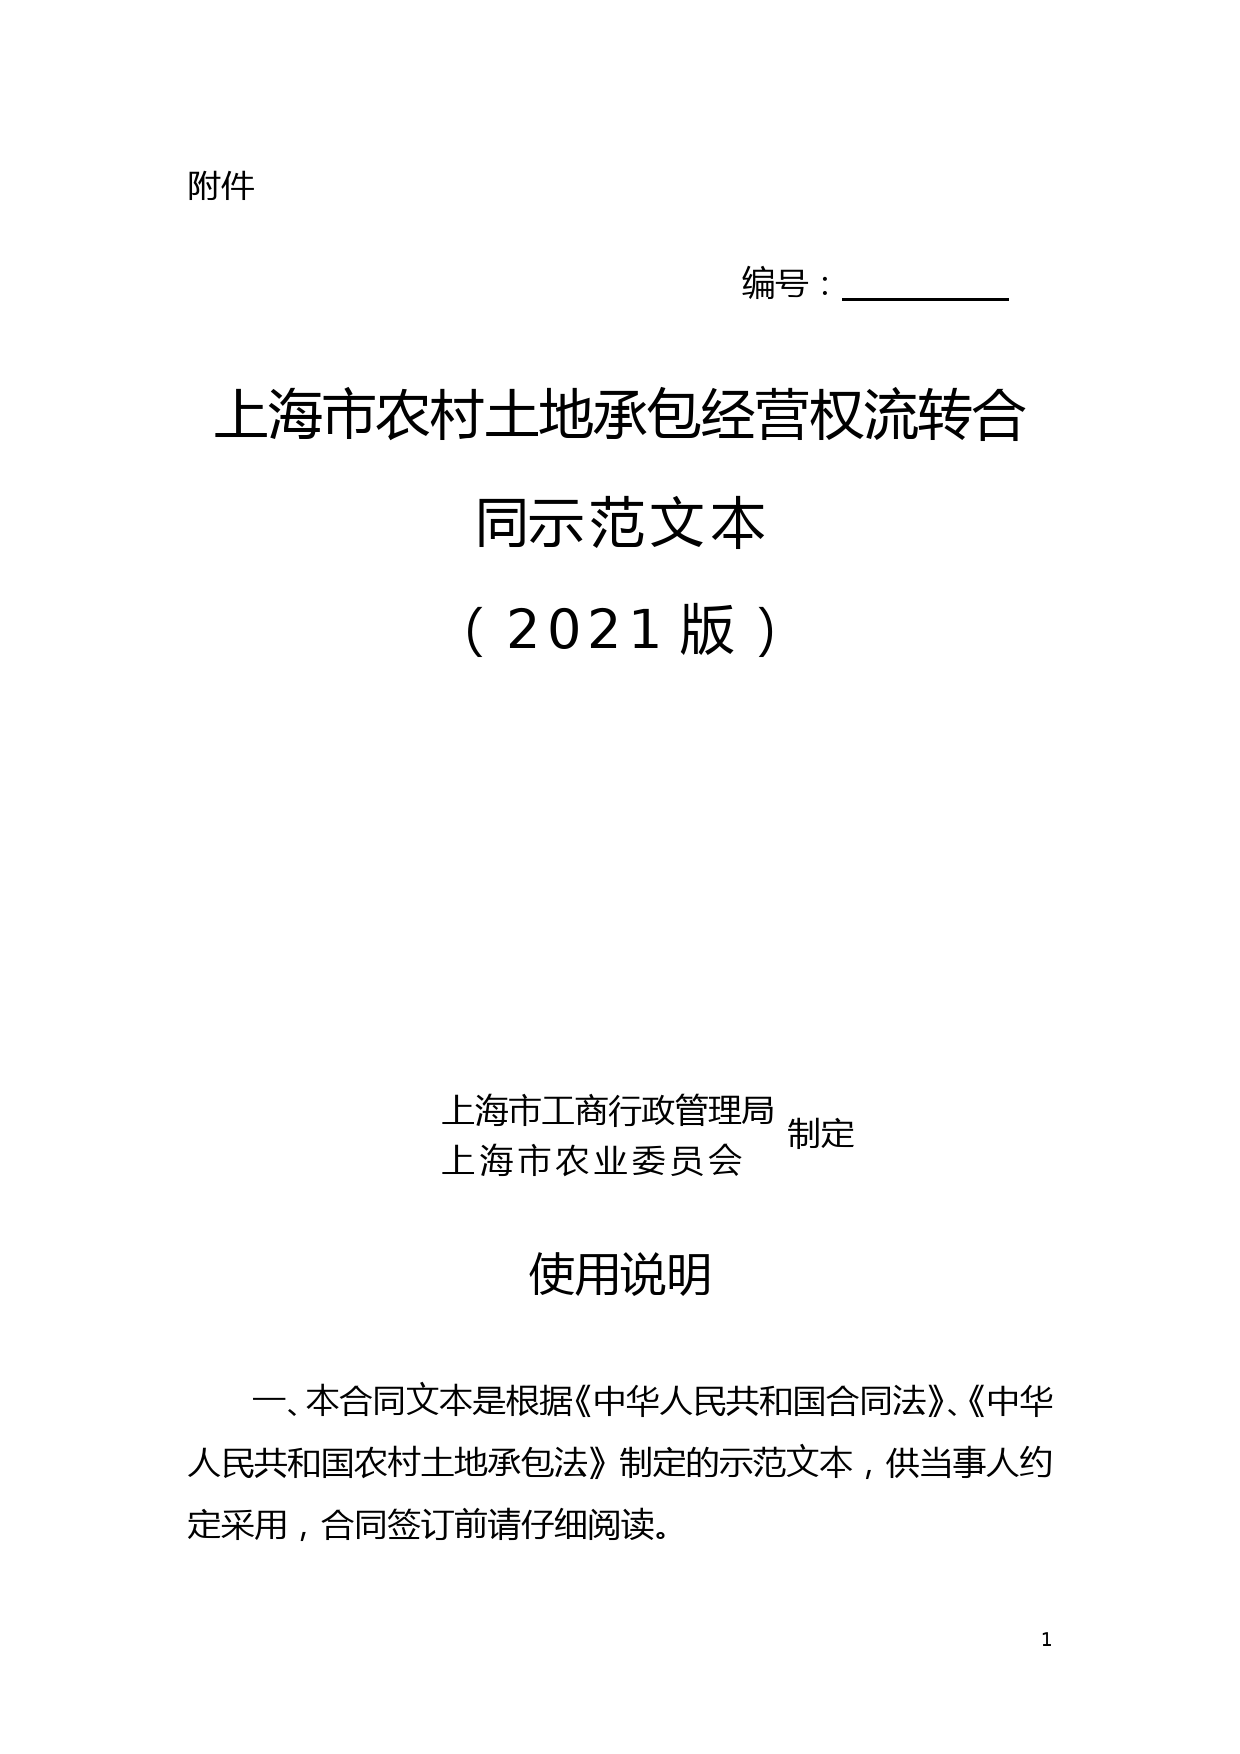 上海市农村土地承包经营权流转合同示范文本(2021版)